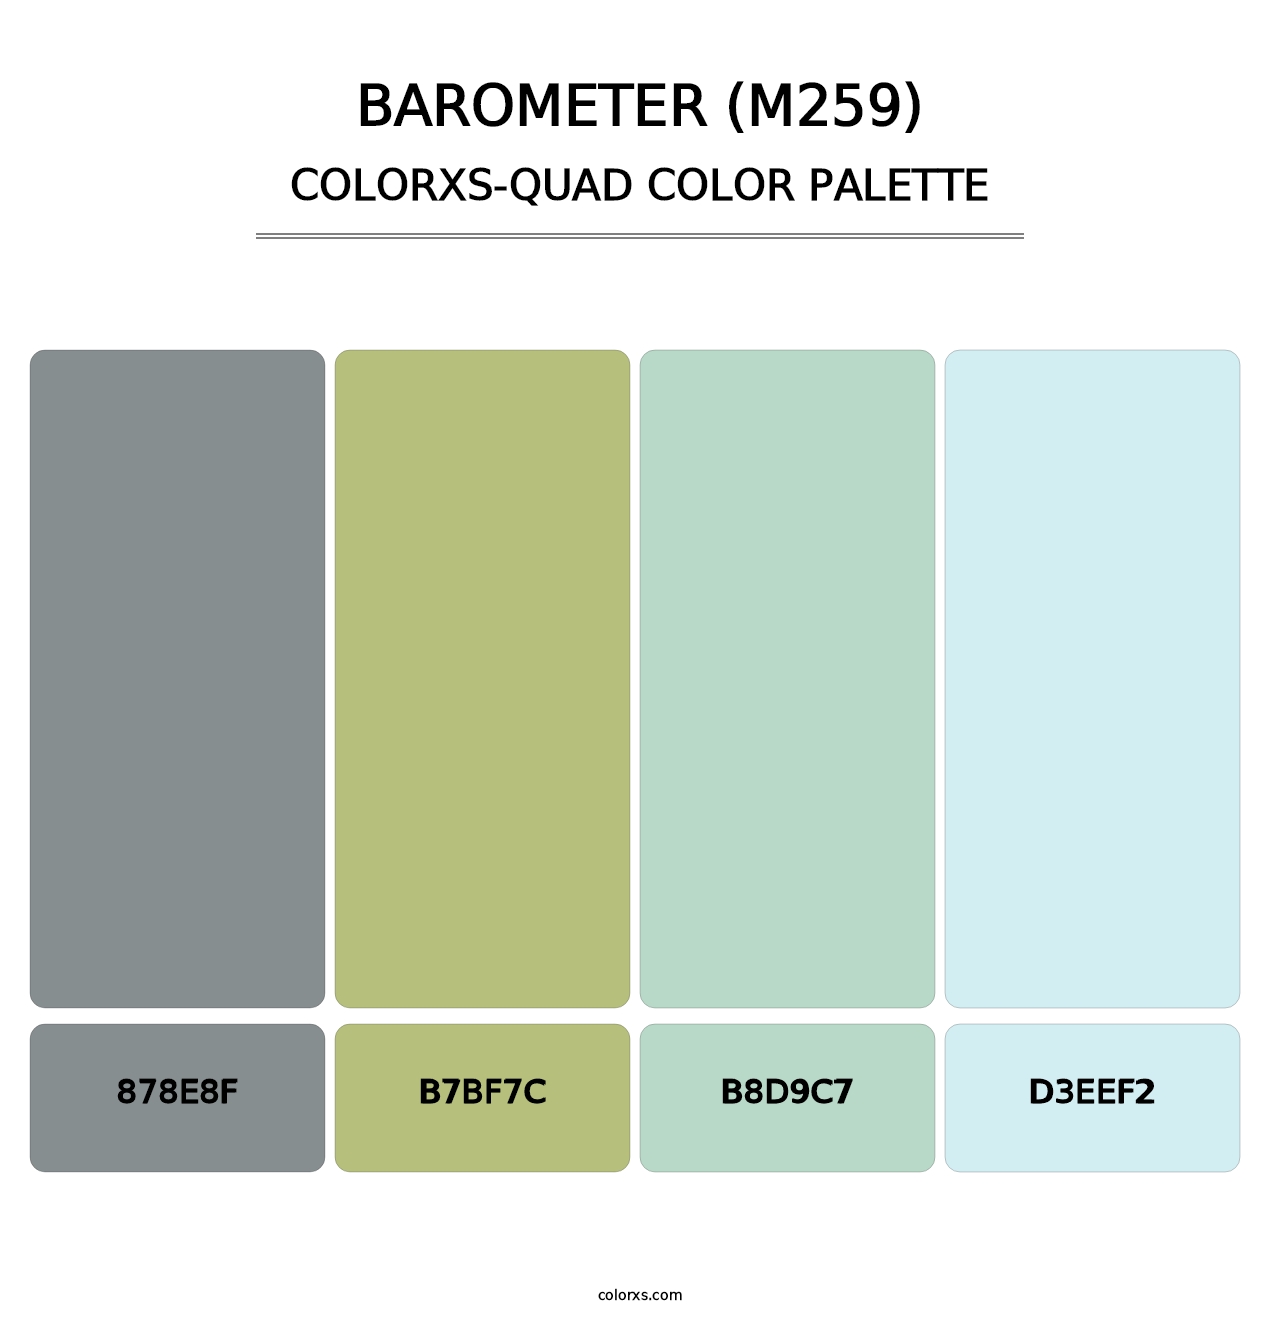 Barometer (M259) - Colorxs Quad Palette